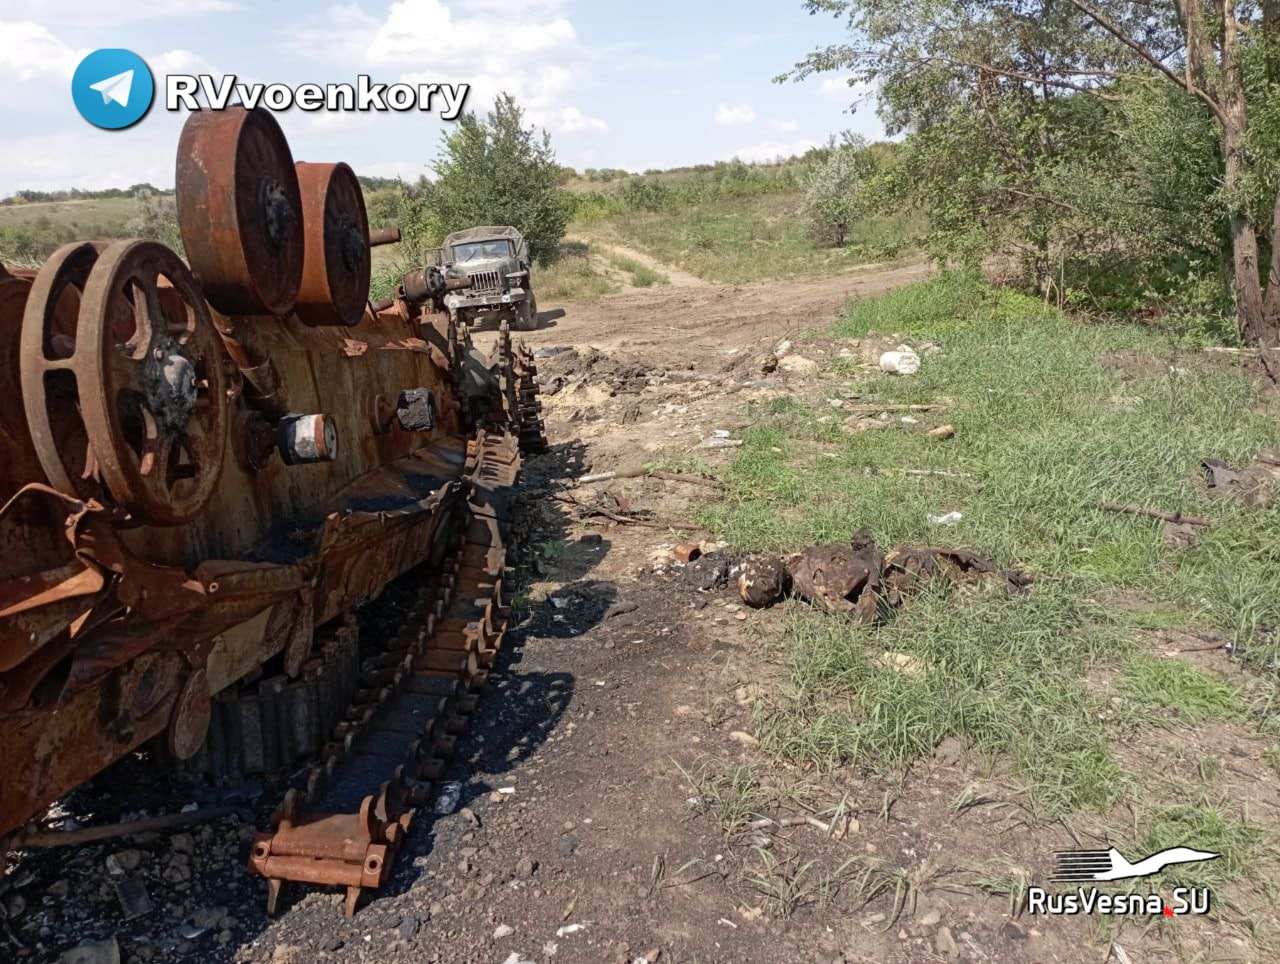 Ռուսական դեսանտային հրետանավորները ոչնչացնում են ուկրաինայի զրահատեխնիկան Խերսոնի ուղղությամբ մարտերում (ՏԵՍԱՆՅՈՒԹ)